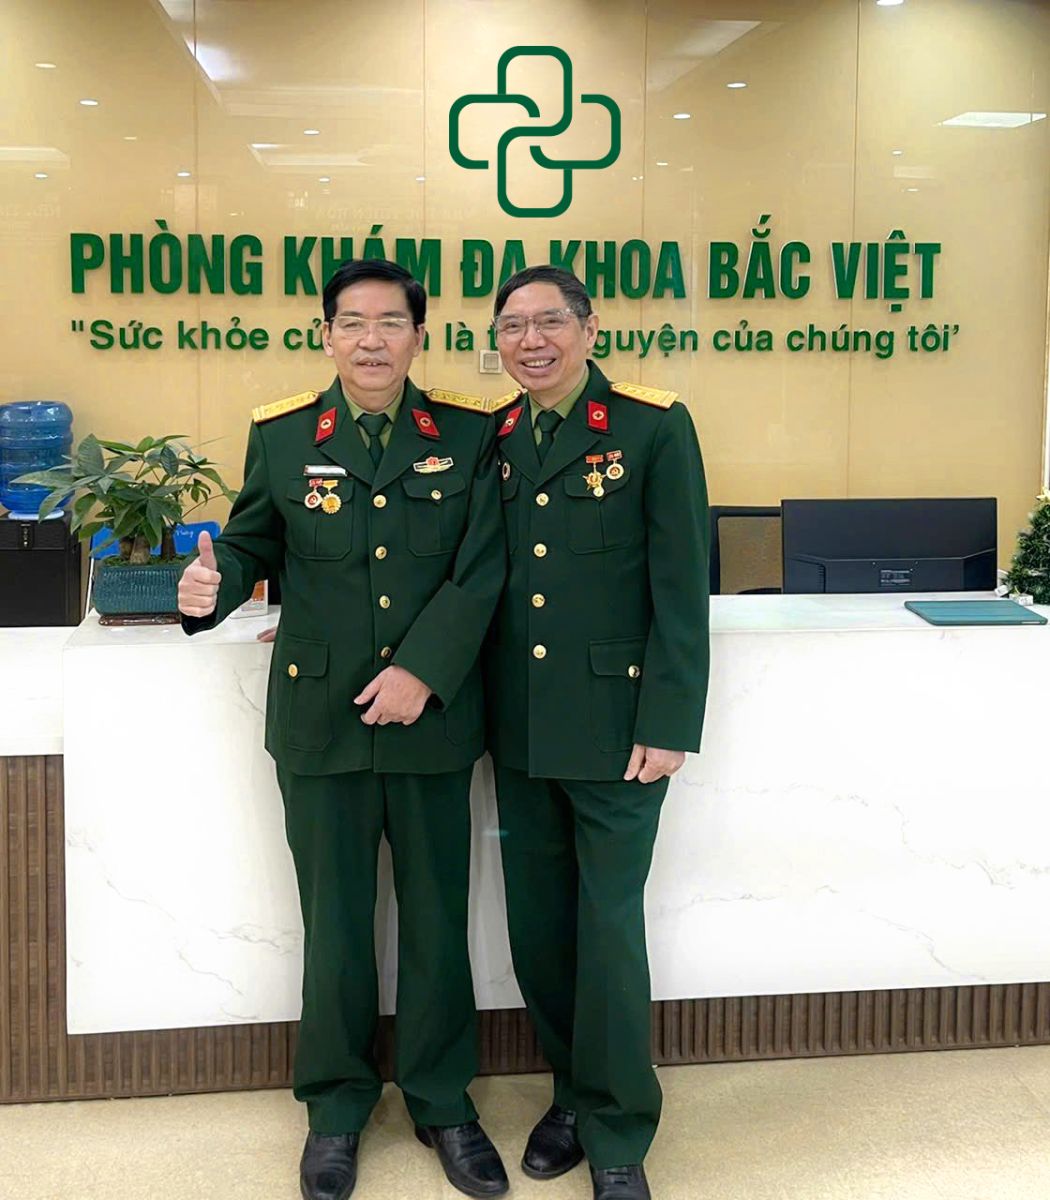 khám bệnh lậu 490K tại Phòng khám Bắc Việt Hà Nội